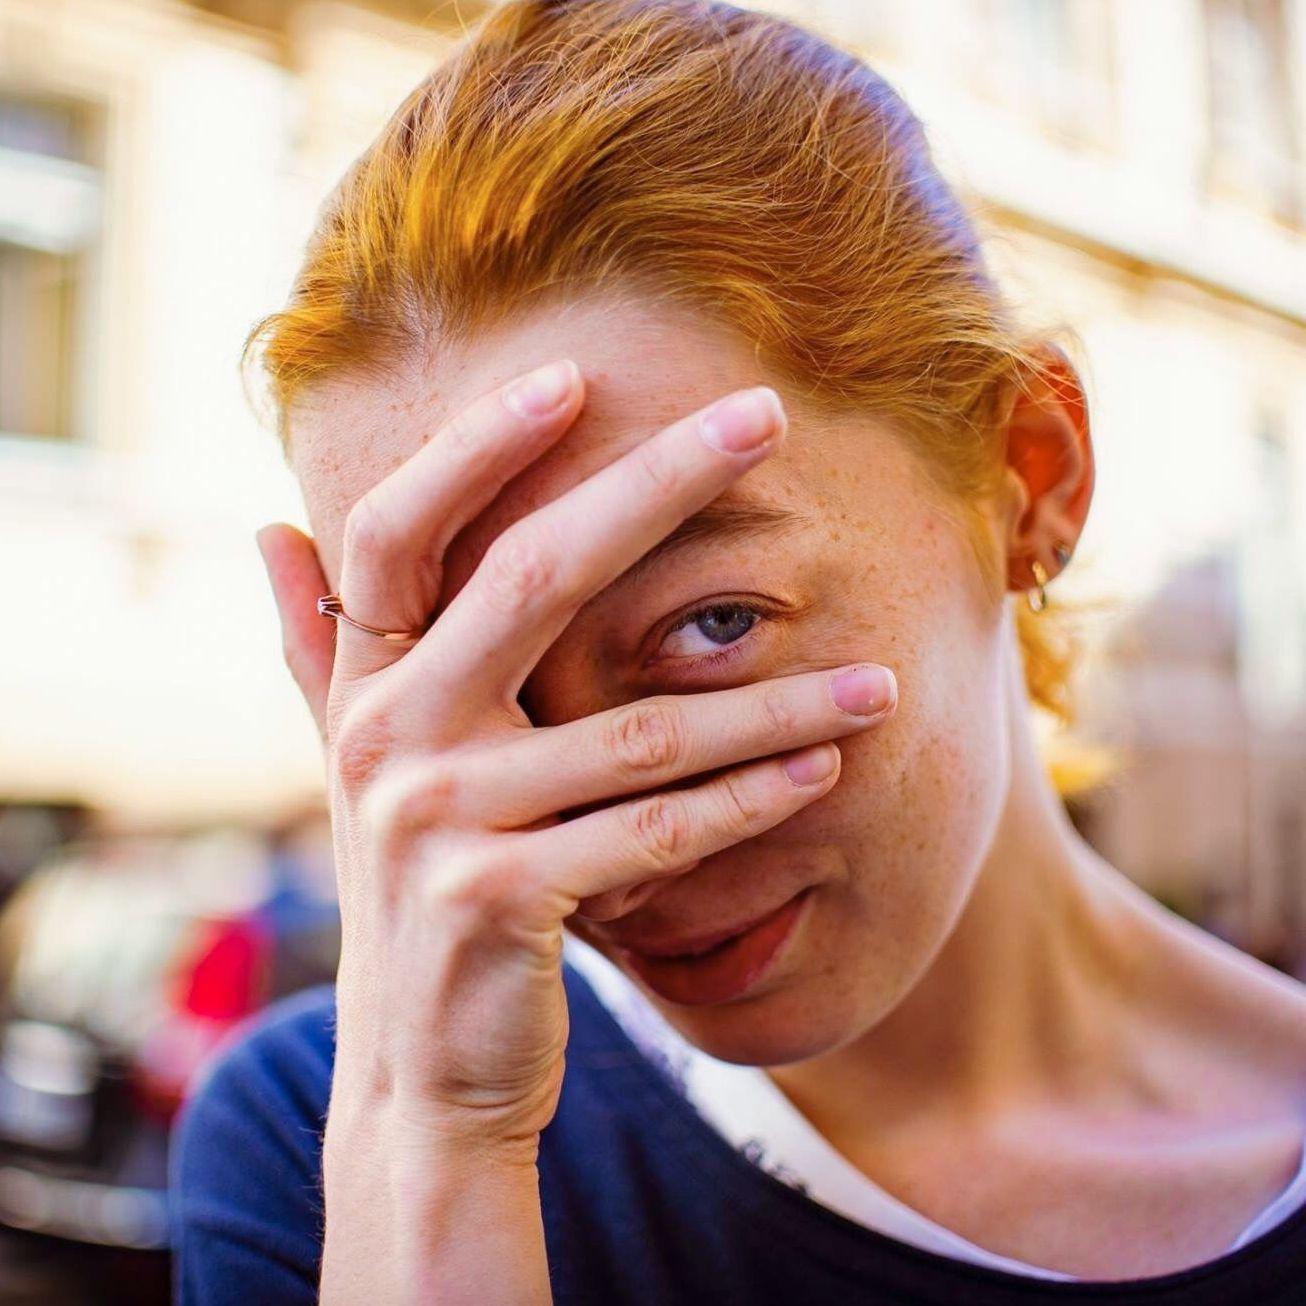 Straßenportrait einer jungen Frau, die ihr Gesicht mit ihrer Hand bedeckt. Sie schaut mit ihrem linken Auge zwischen Ring- und Mittelfinger hindurch.